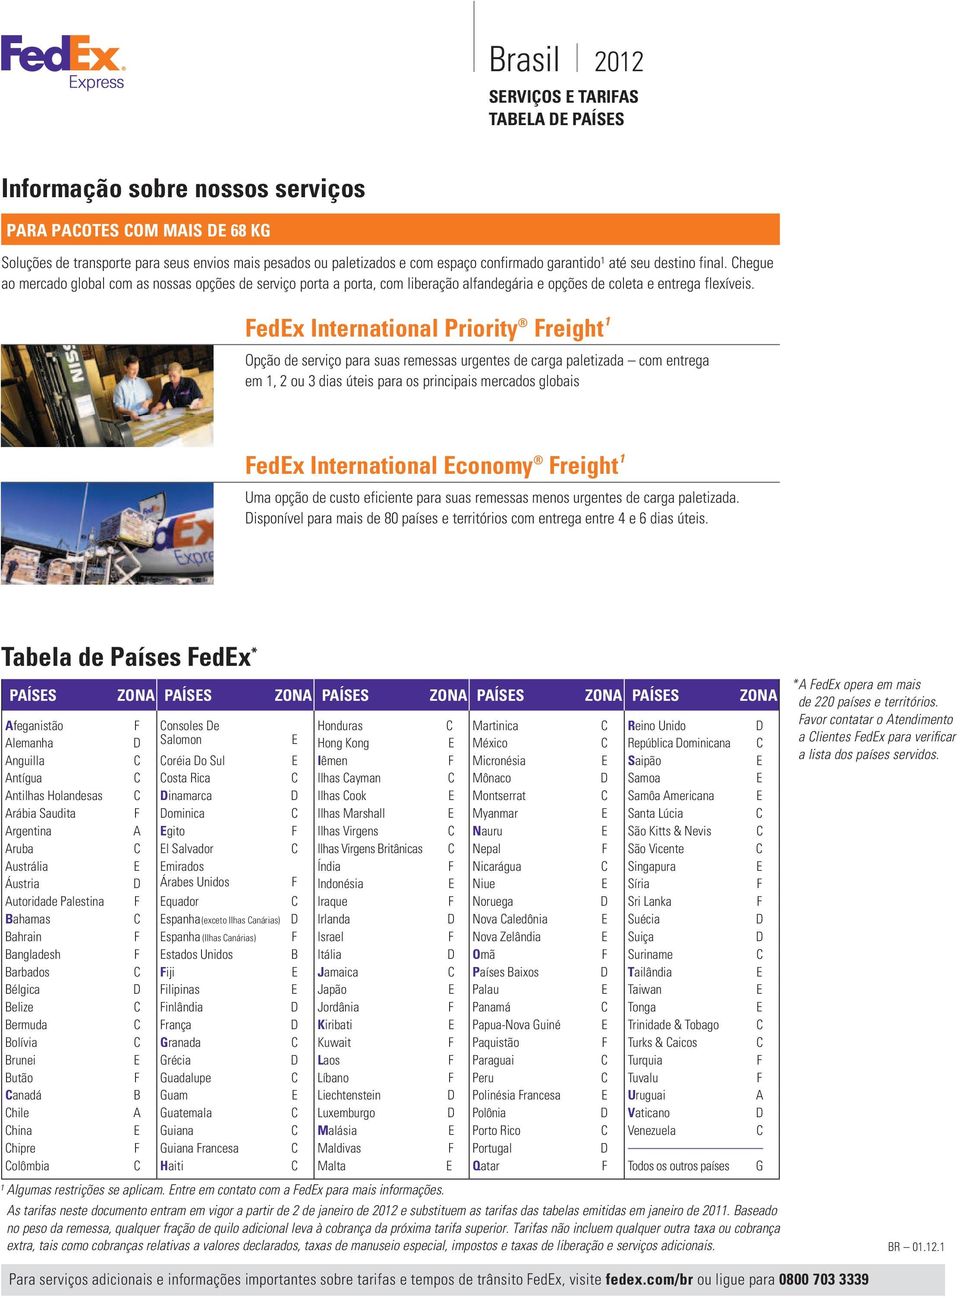 FedEx International Priority Freight 1 Opção de serviço para suas remessas urgentes de carga paletizada com entrega em 1, 2 ou 3 dias úteis para os principais mercados globais FedEx International